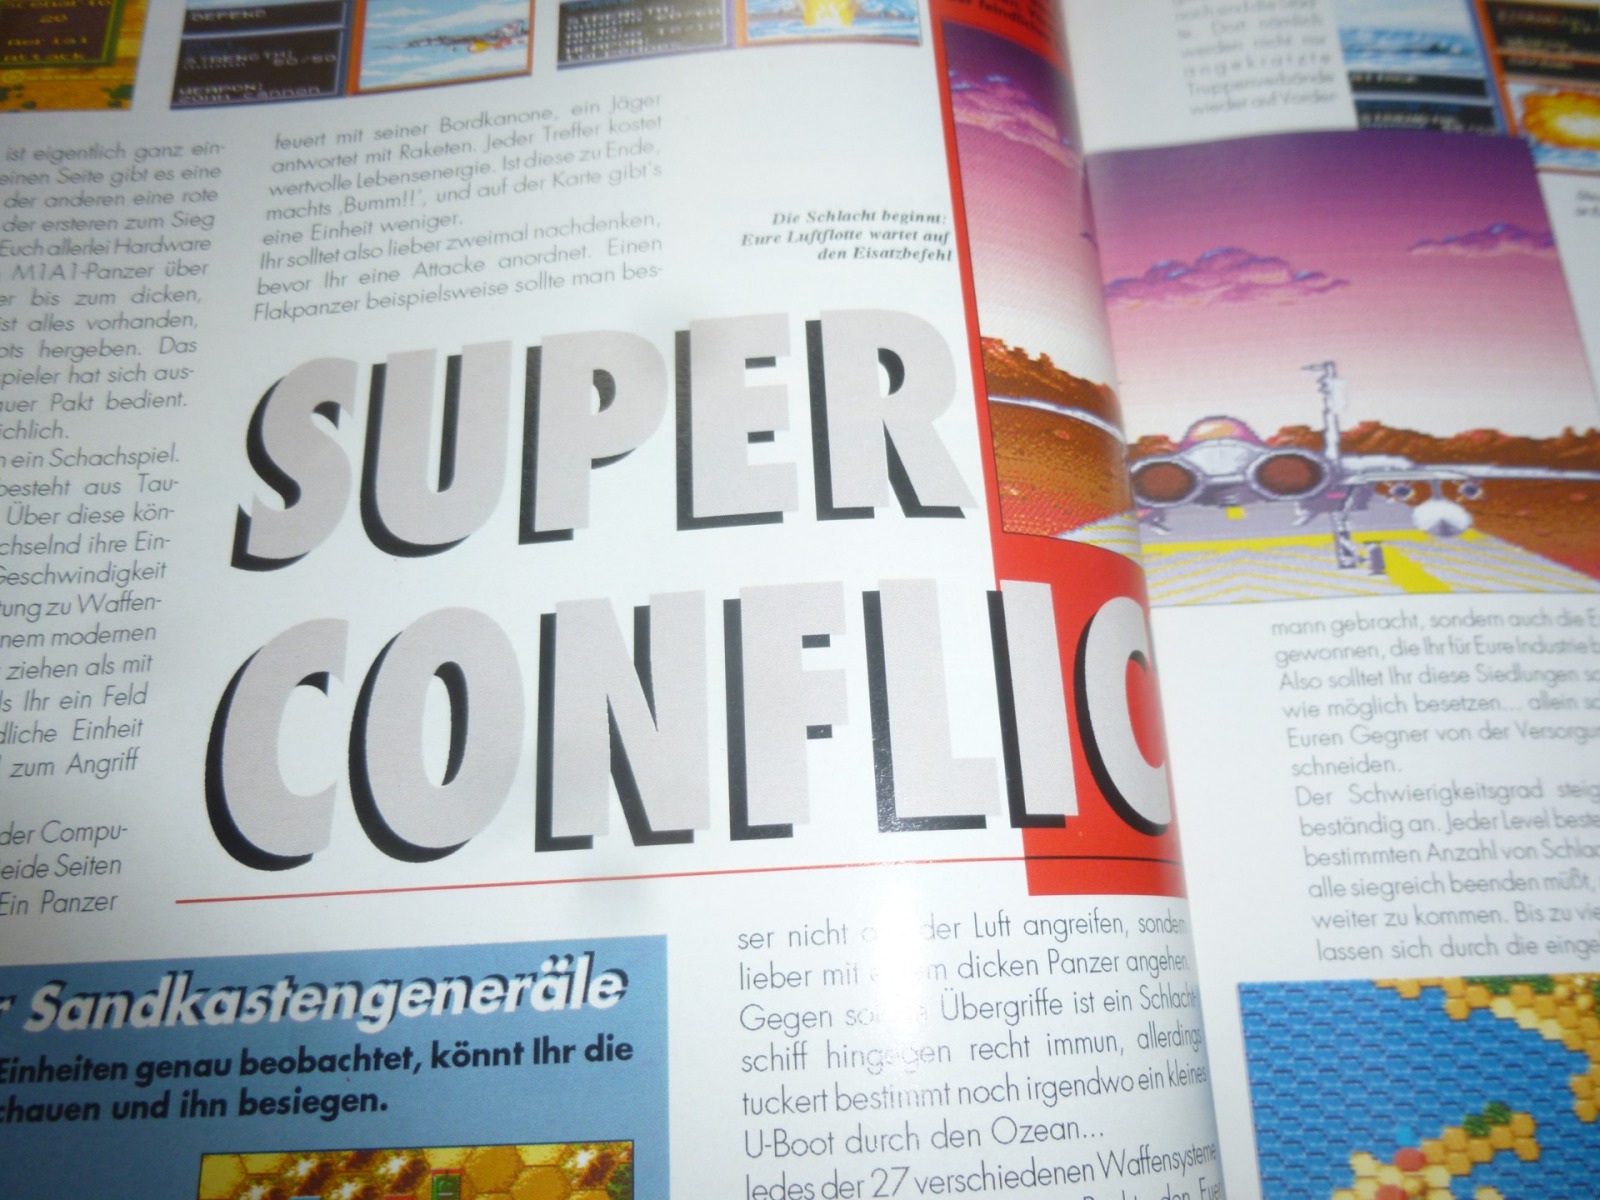 TOTAL Das unabhängige Magazin - 100% Nintendo - Ausgabe 7/93 1993 13